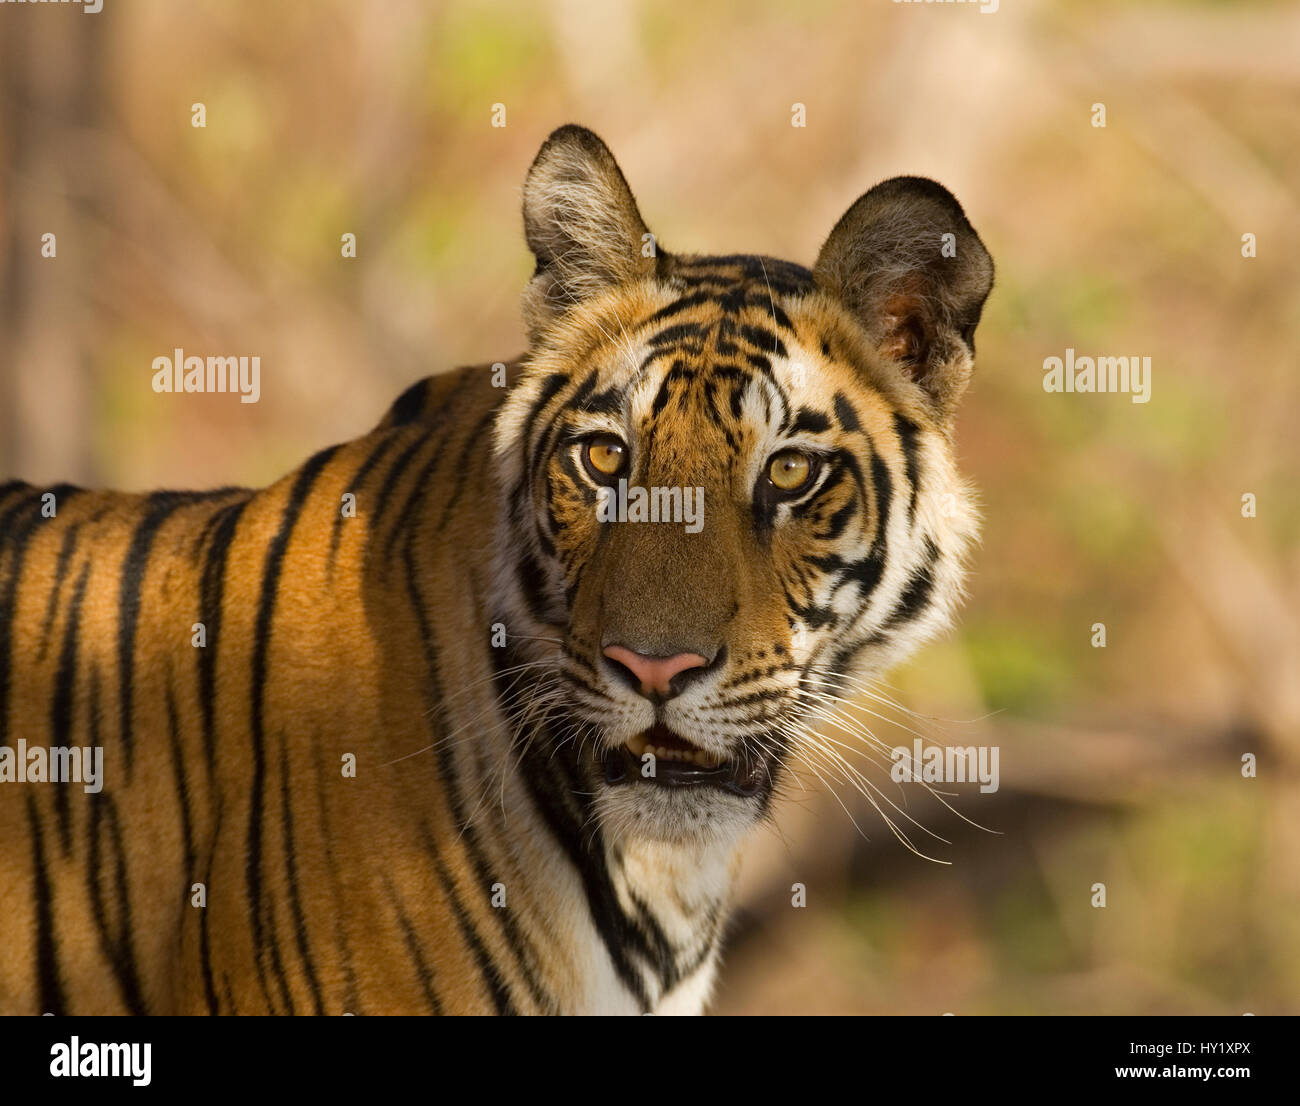 Ritratto di Tiger (Panthera tigris) Bandhavgarh National Park, India. Specie in via di estinzione. Foto Stock